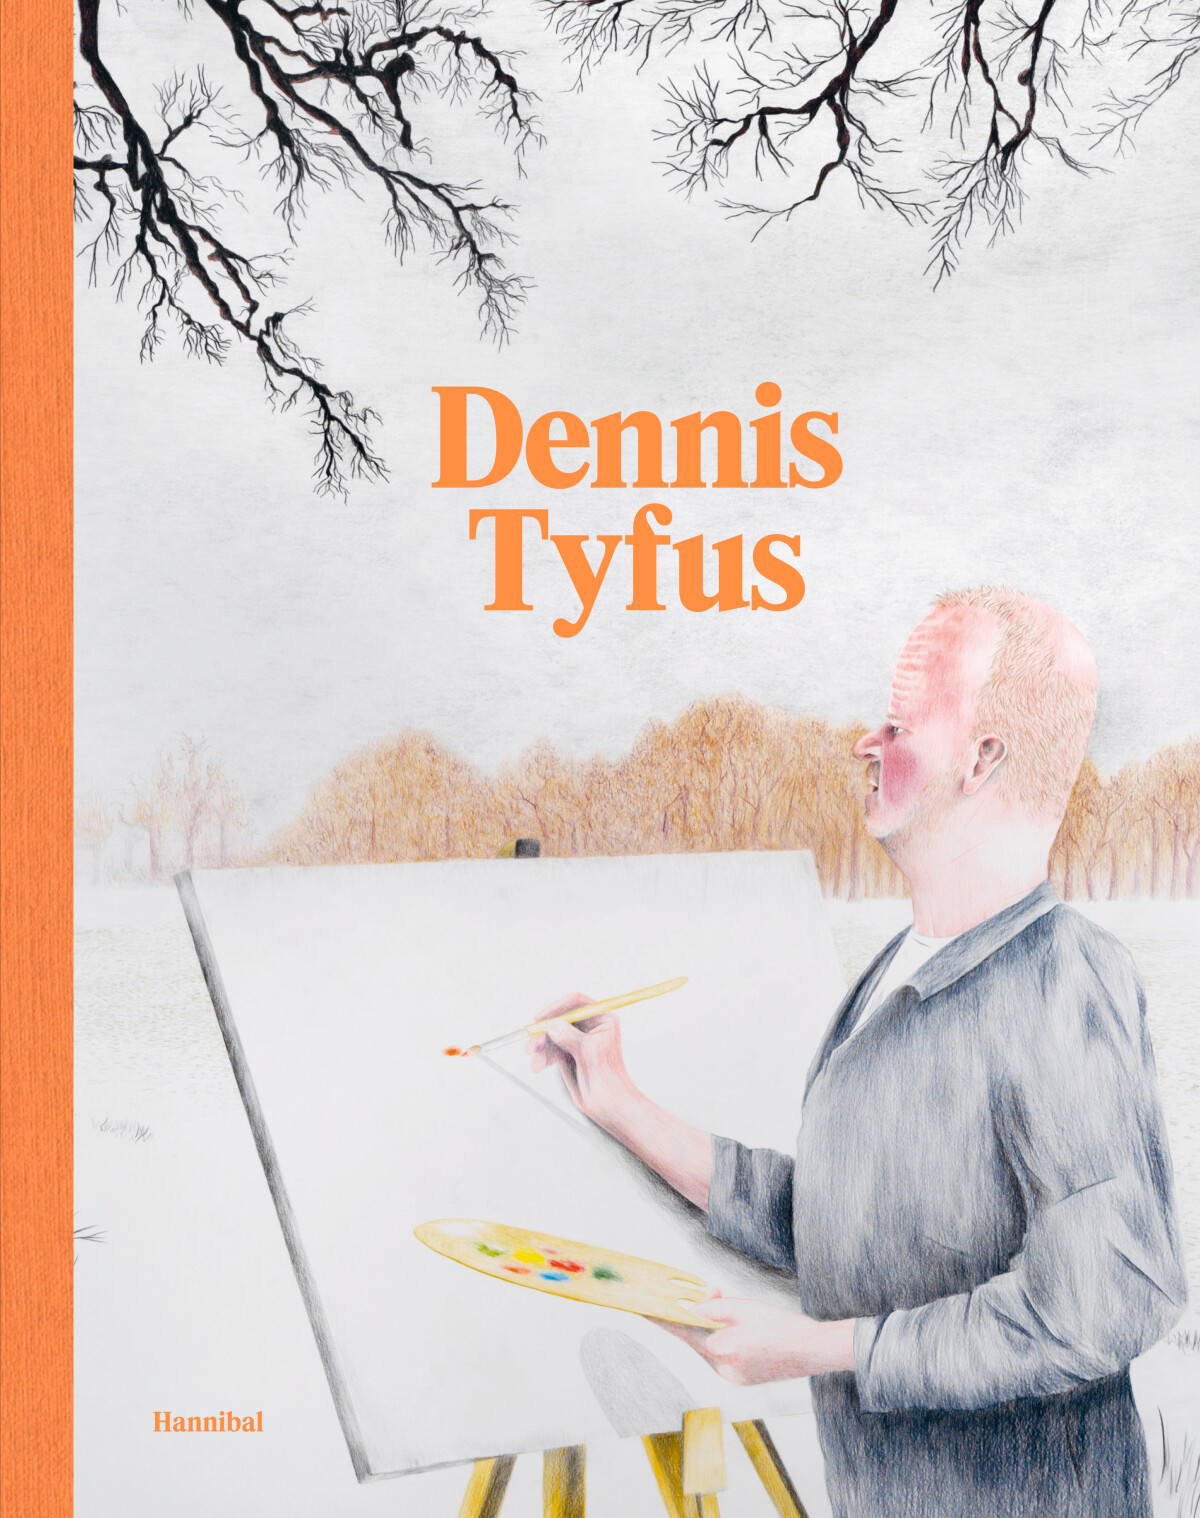 Dennis Tyfus